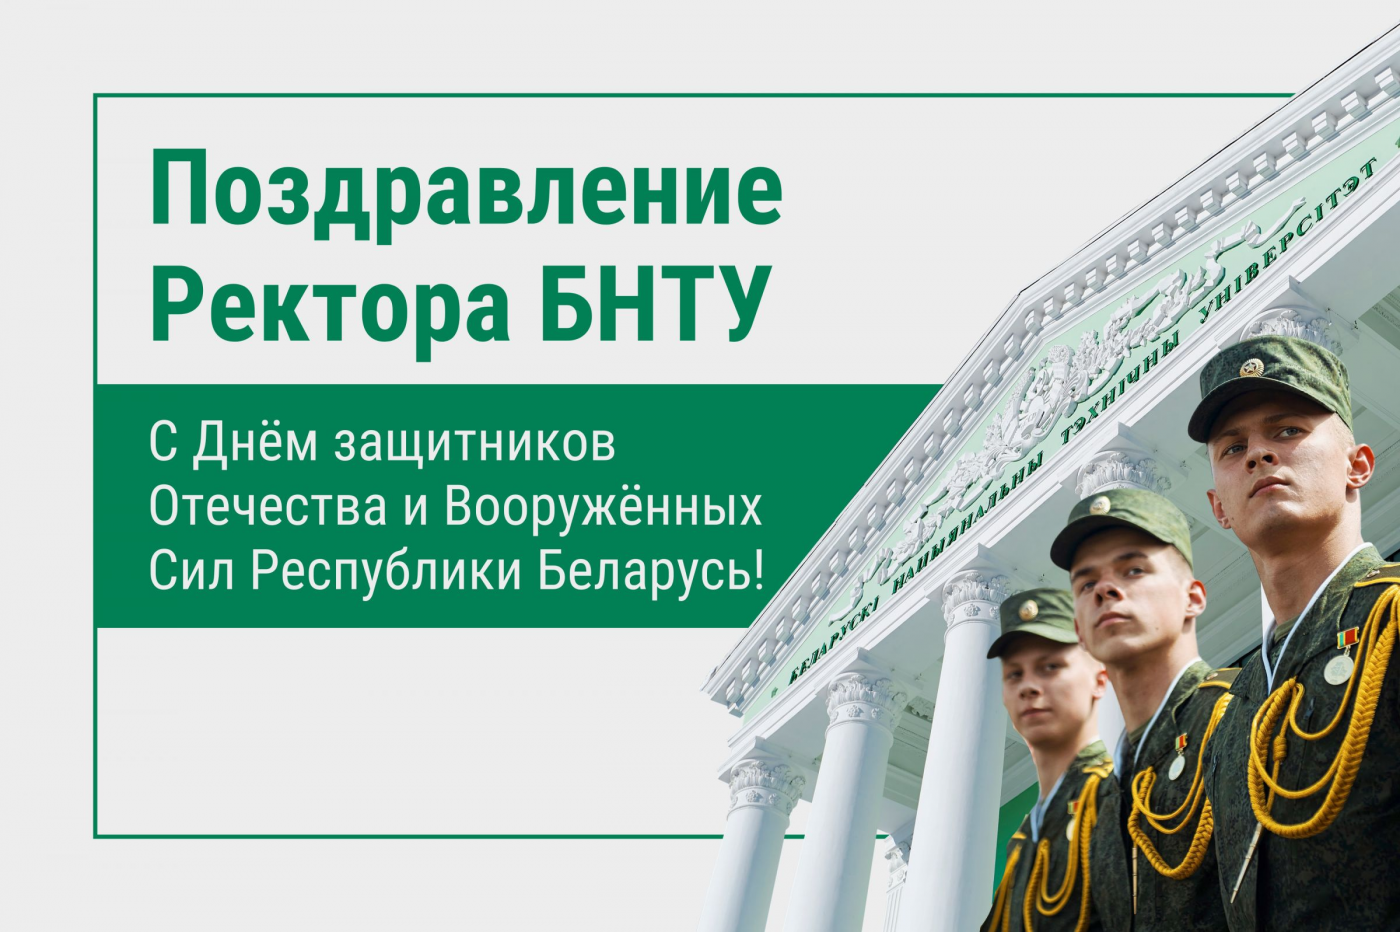 Поздравление Ректора БНТУ с Днем защитников Отечества и Вооруженных сил Республики Беларусь